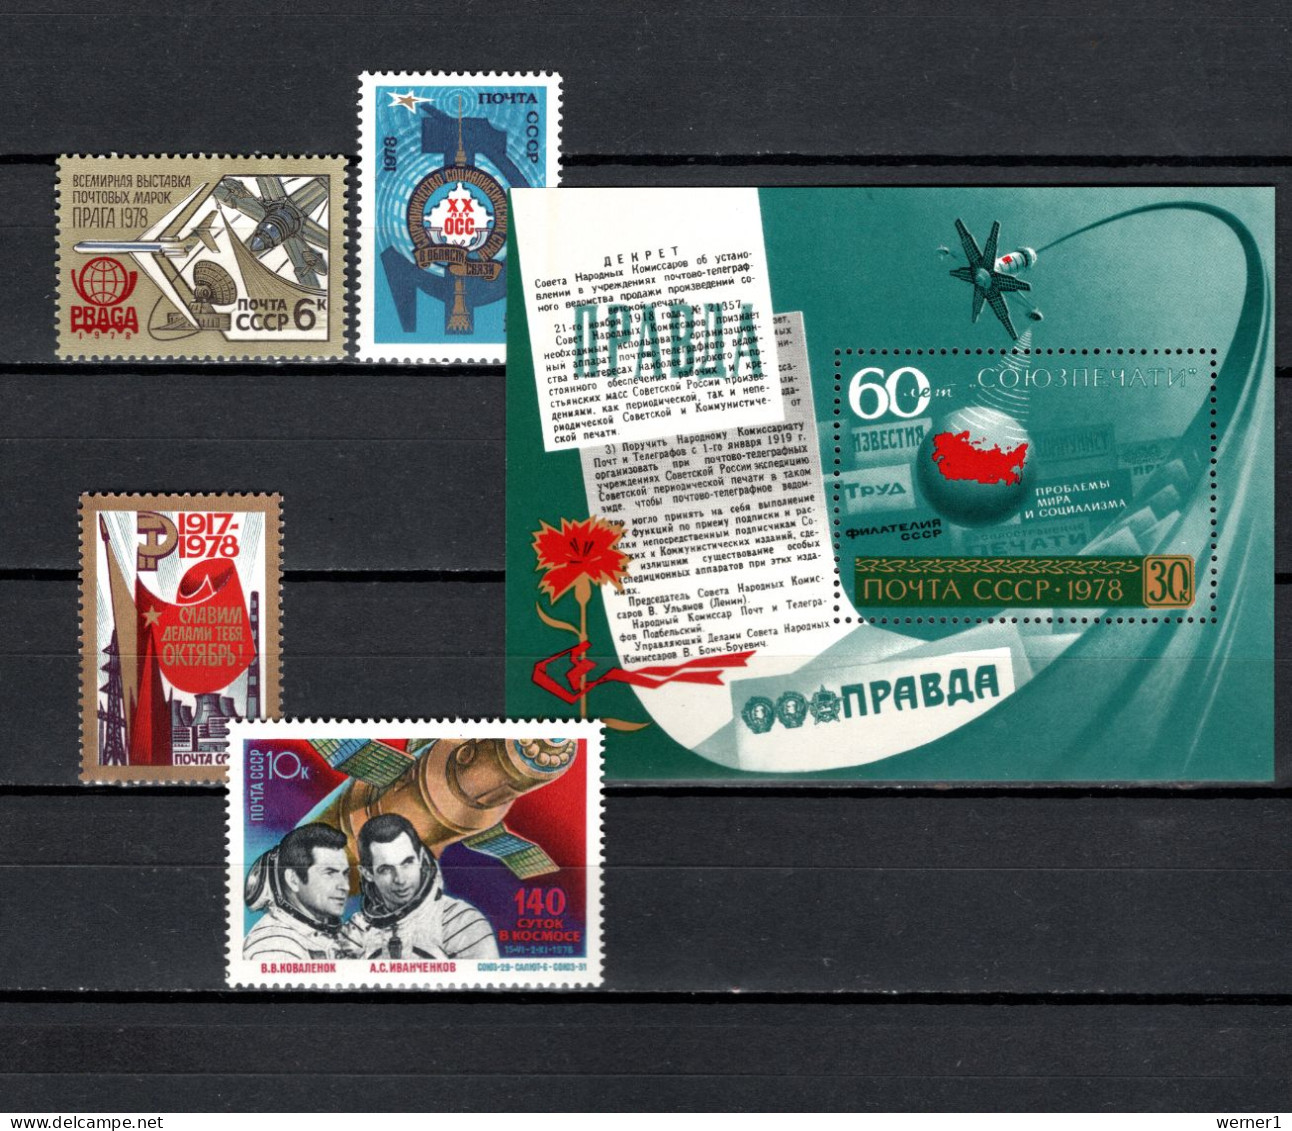 USSR Russia 1978 Space, Praga '78, OSS, October Revolution, Soyuz 29, Newspaper, 4 Stamps + S/s MNH - UdSSR